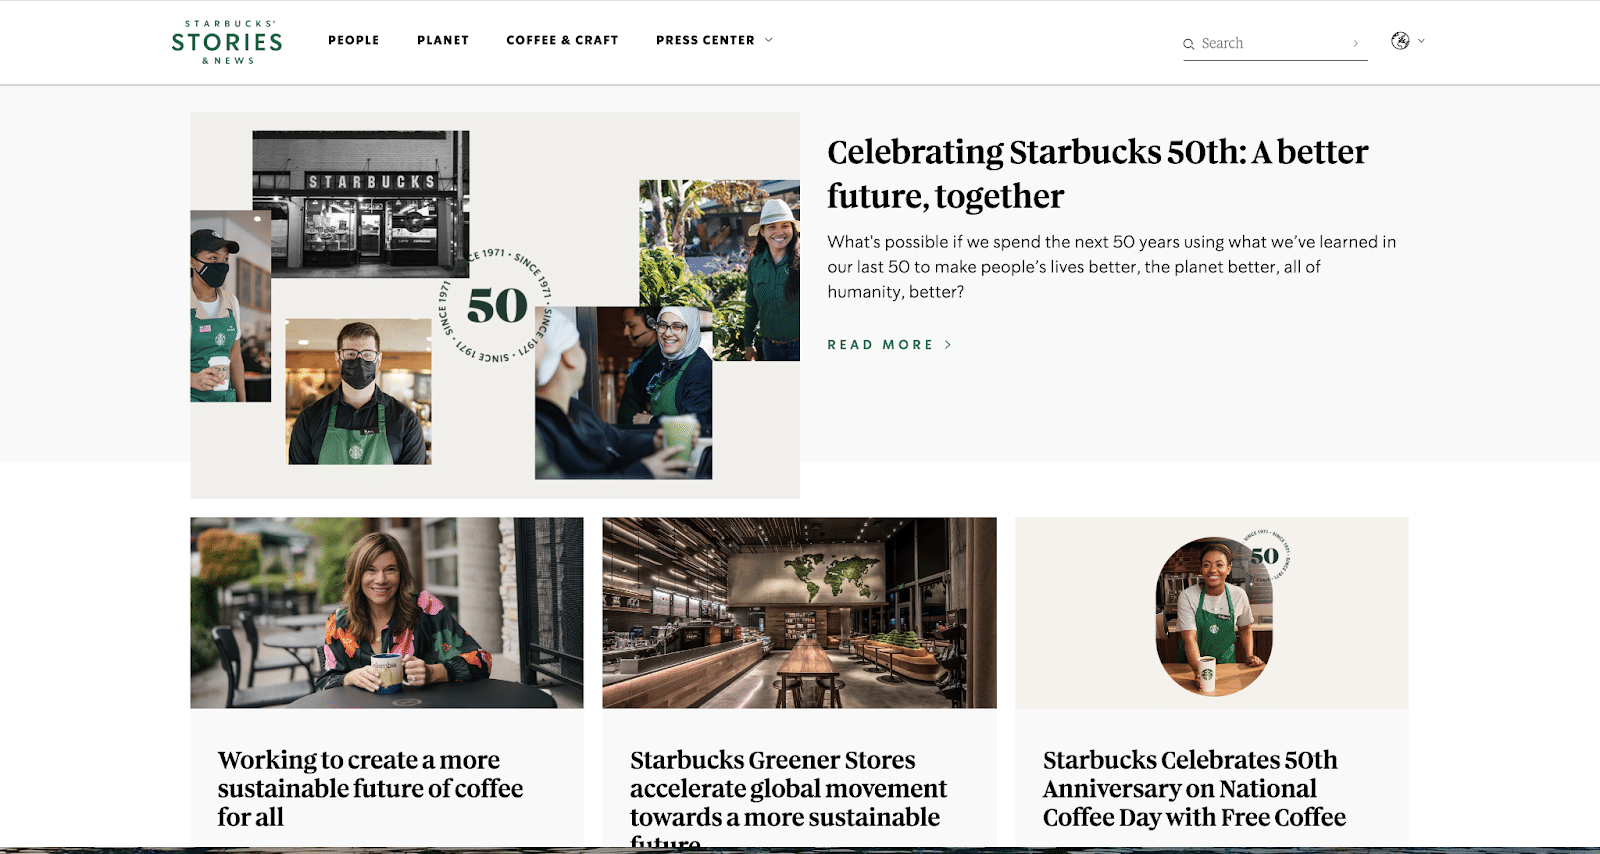 O blog Starbucks Stories